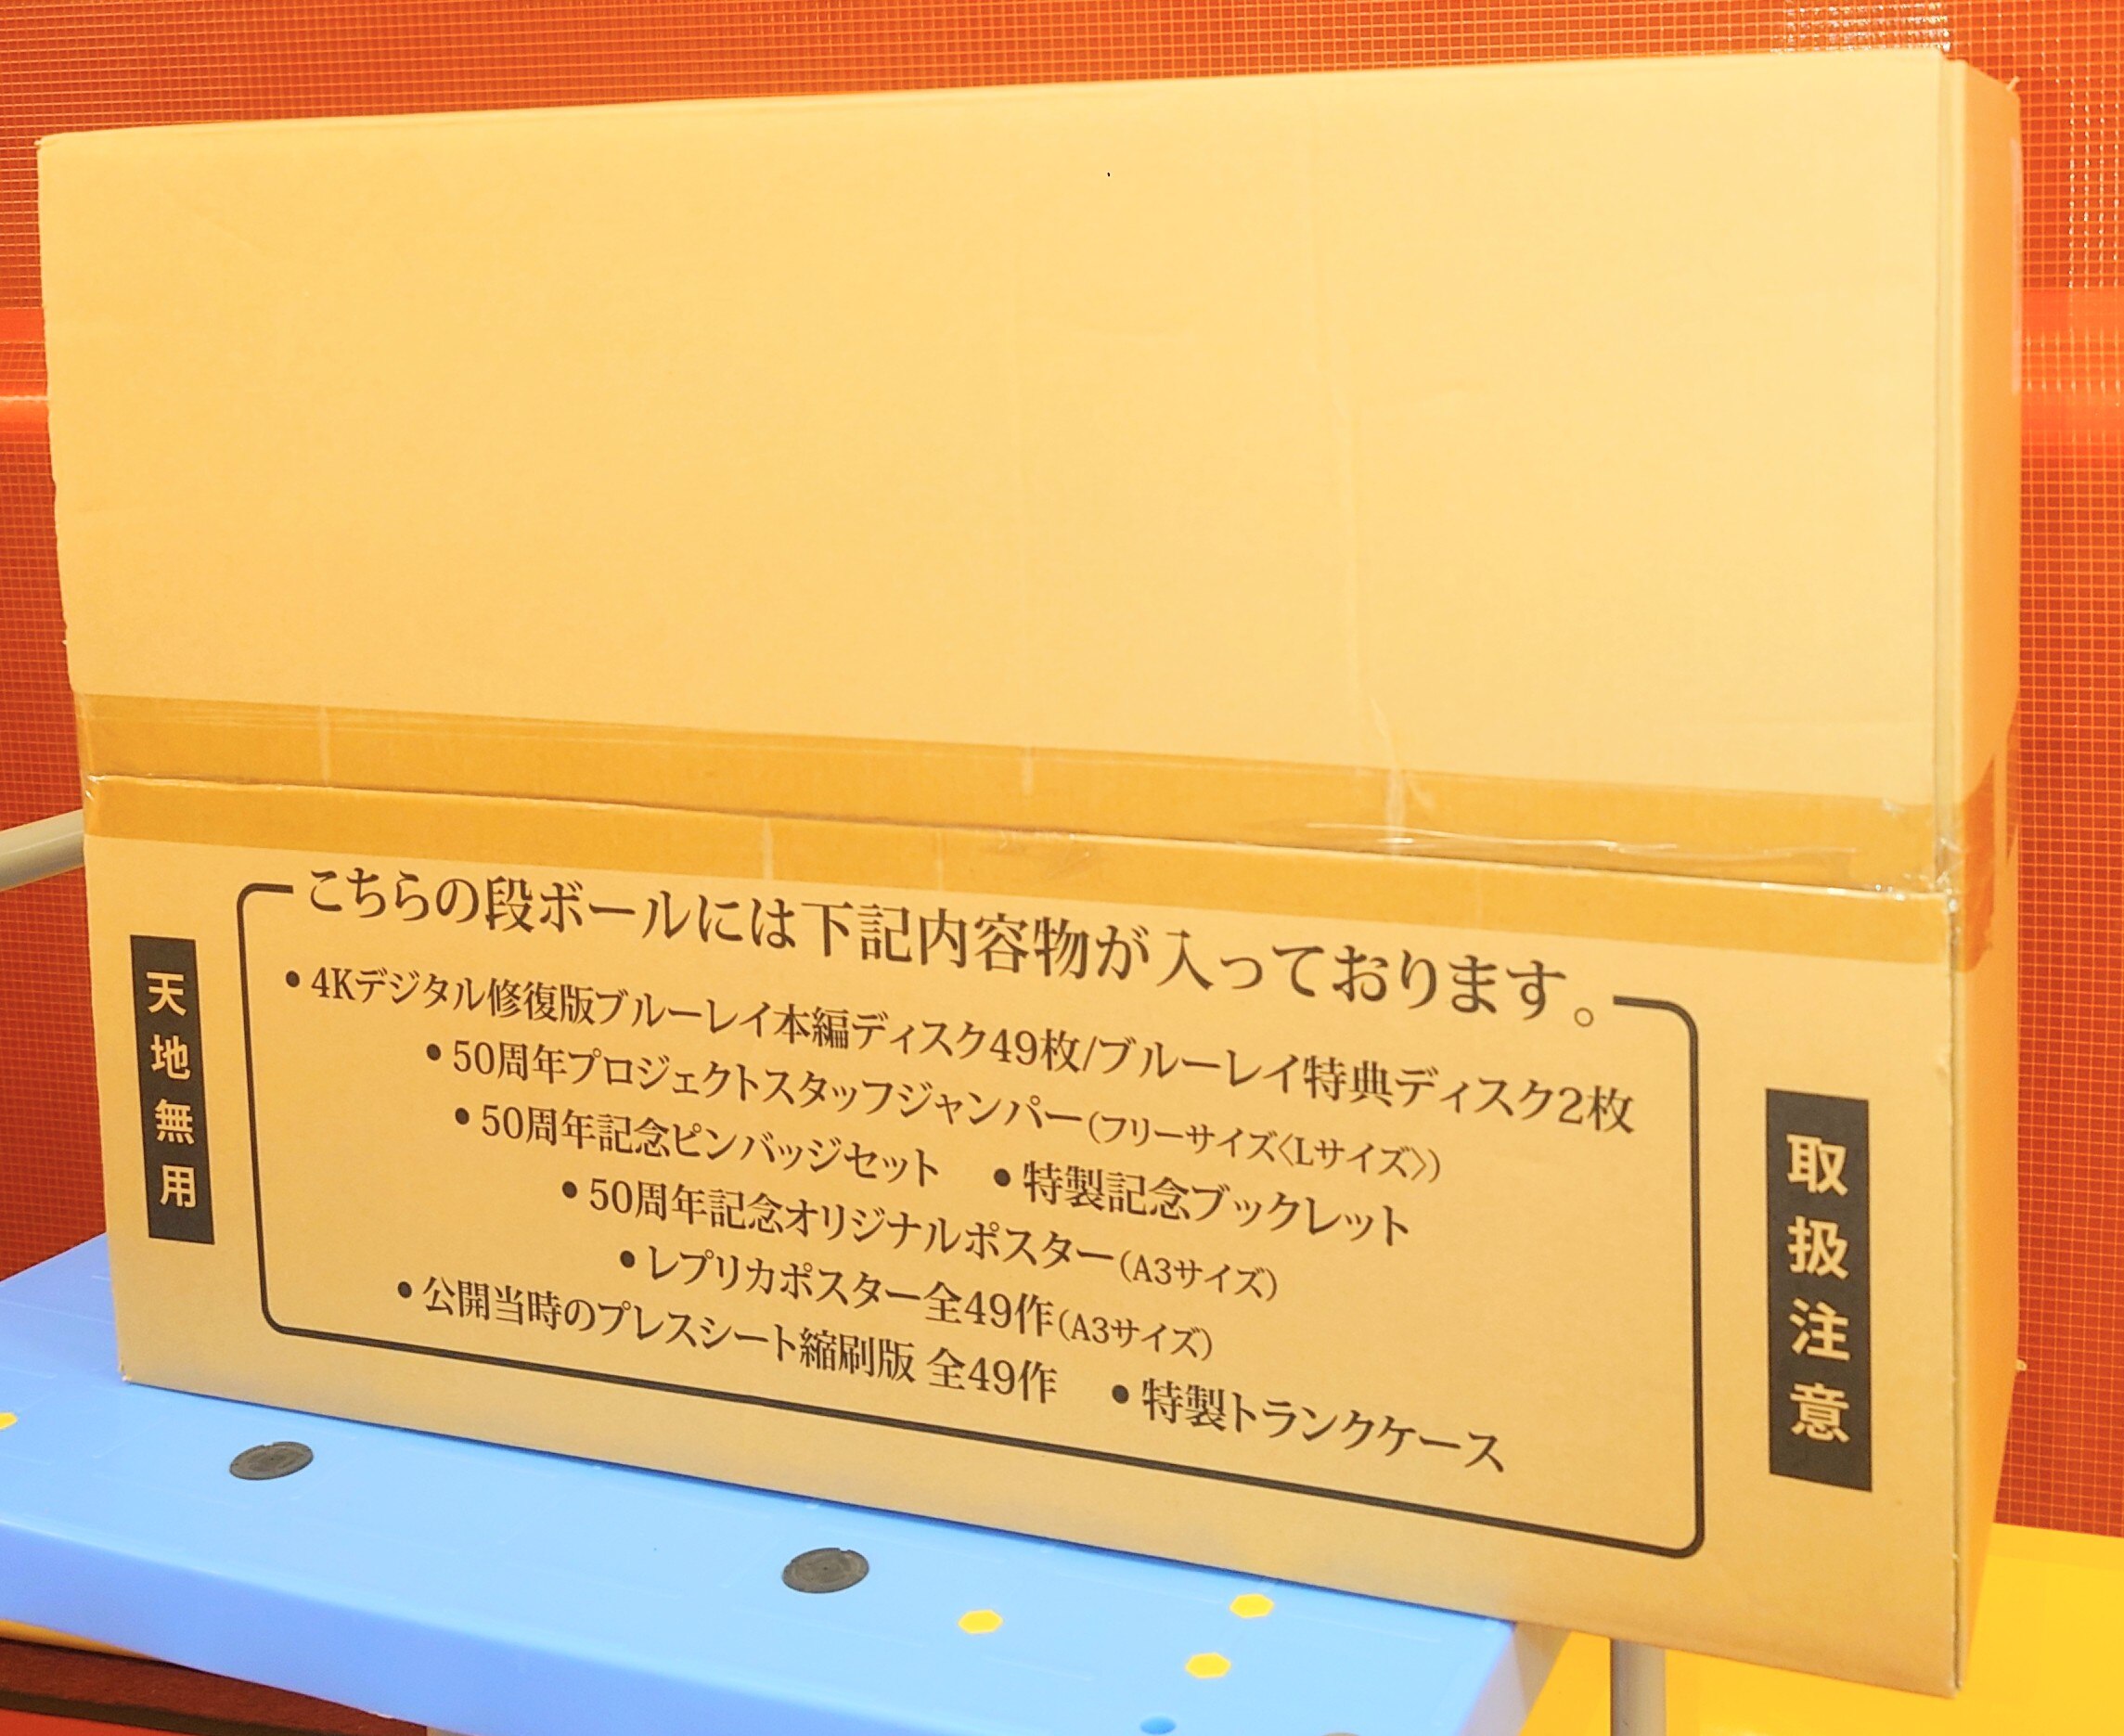 国内映画Blu ray 男はつらいよ 50周年記念 復刻 寅んく 4Kデジタル修復版ブルーレイ全巻ボックス 未開封 輸送箱イタミ